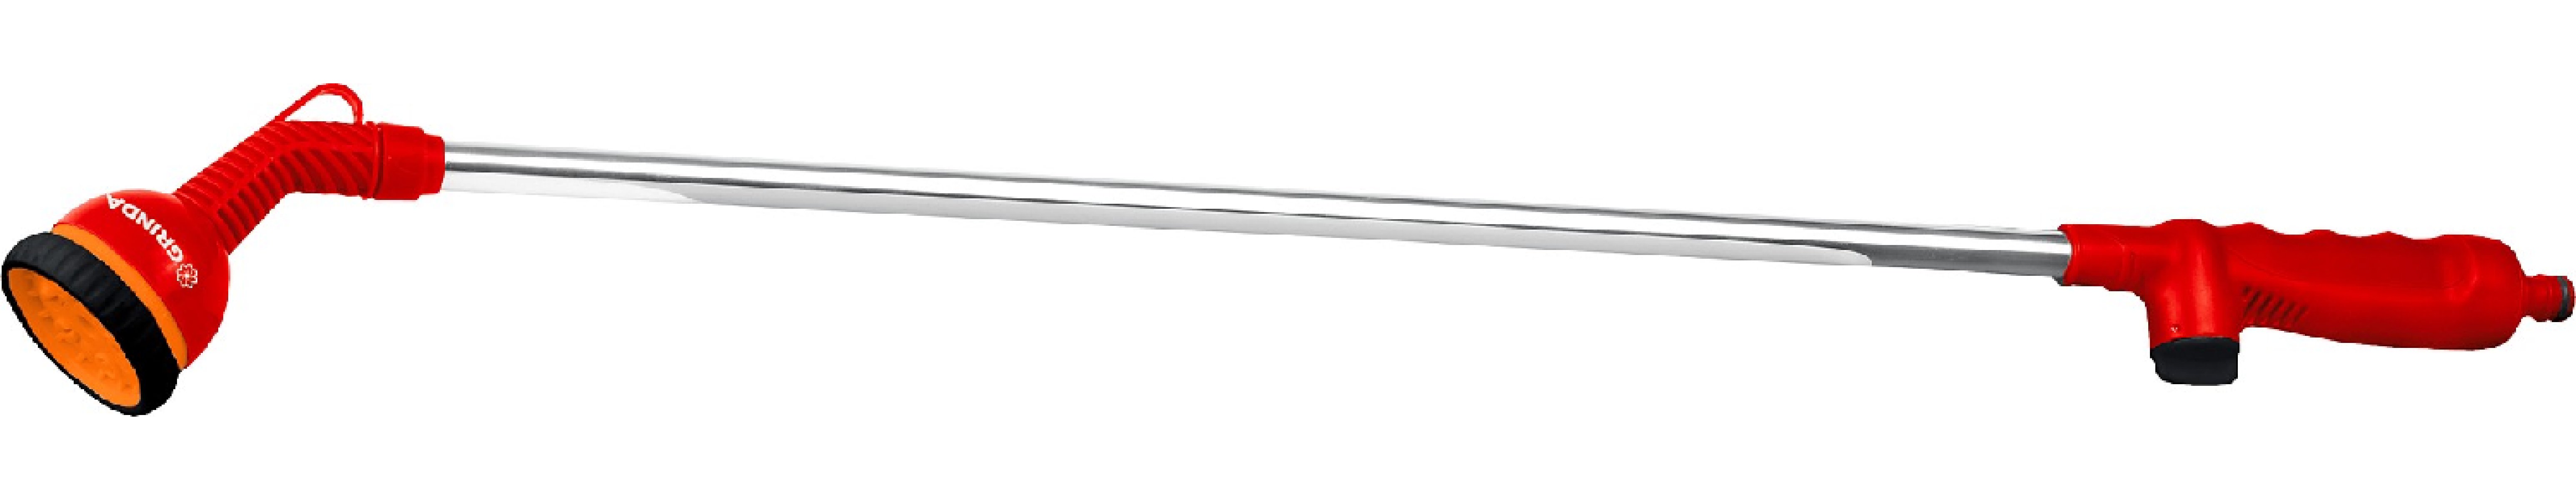 Поливочный наконечник GRINDA L-10, 10 режимов, на алюминиевом удлинителе 890 мм (8-427484_z01)